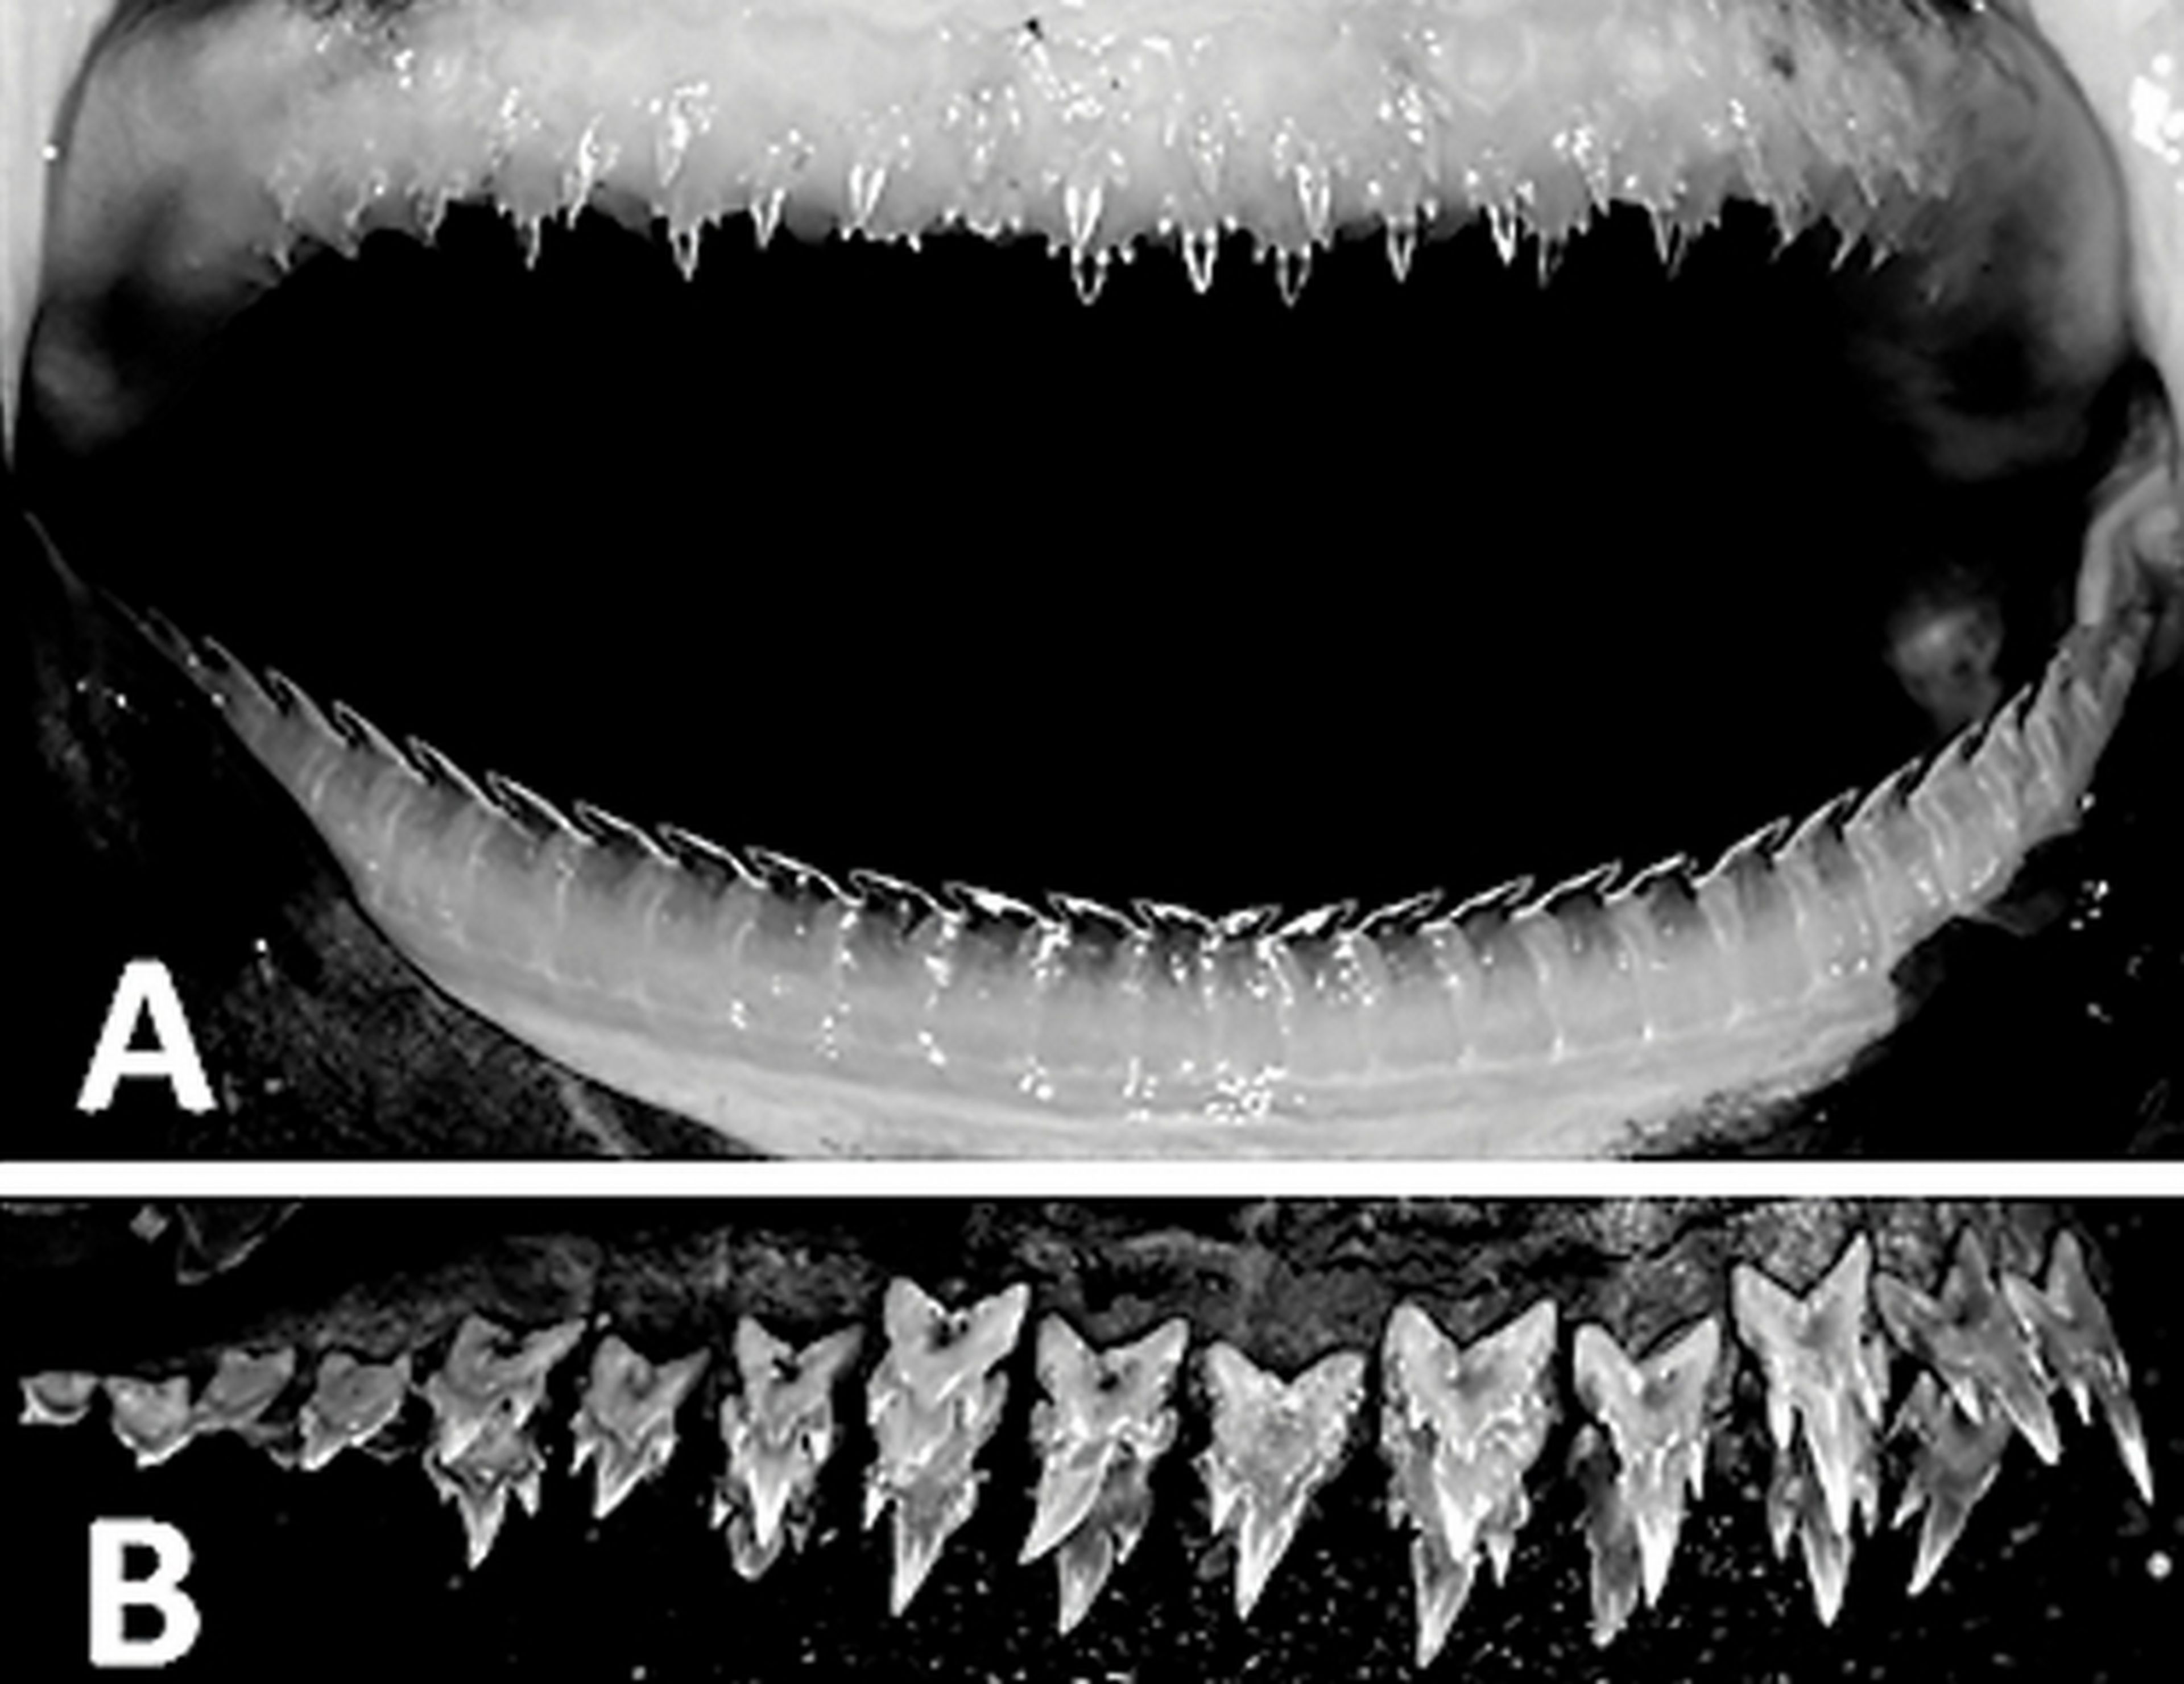 Descubren en México un tiburón linterna que brilla en la oscuridad